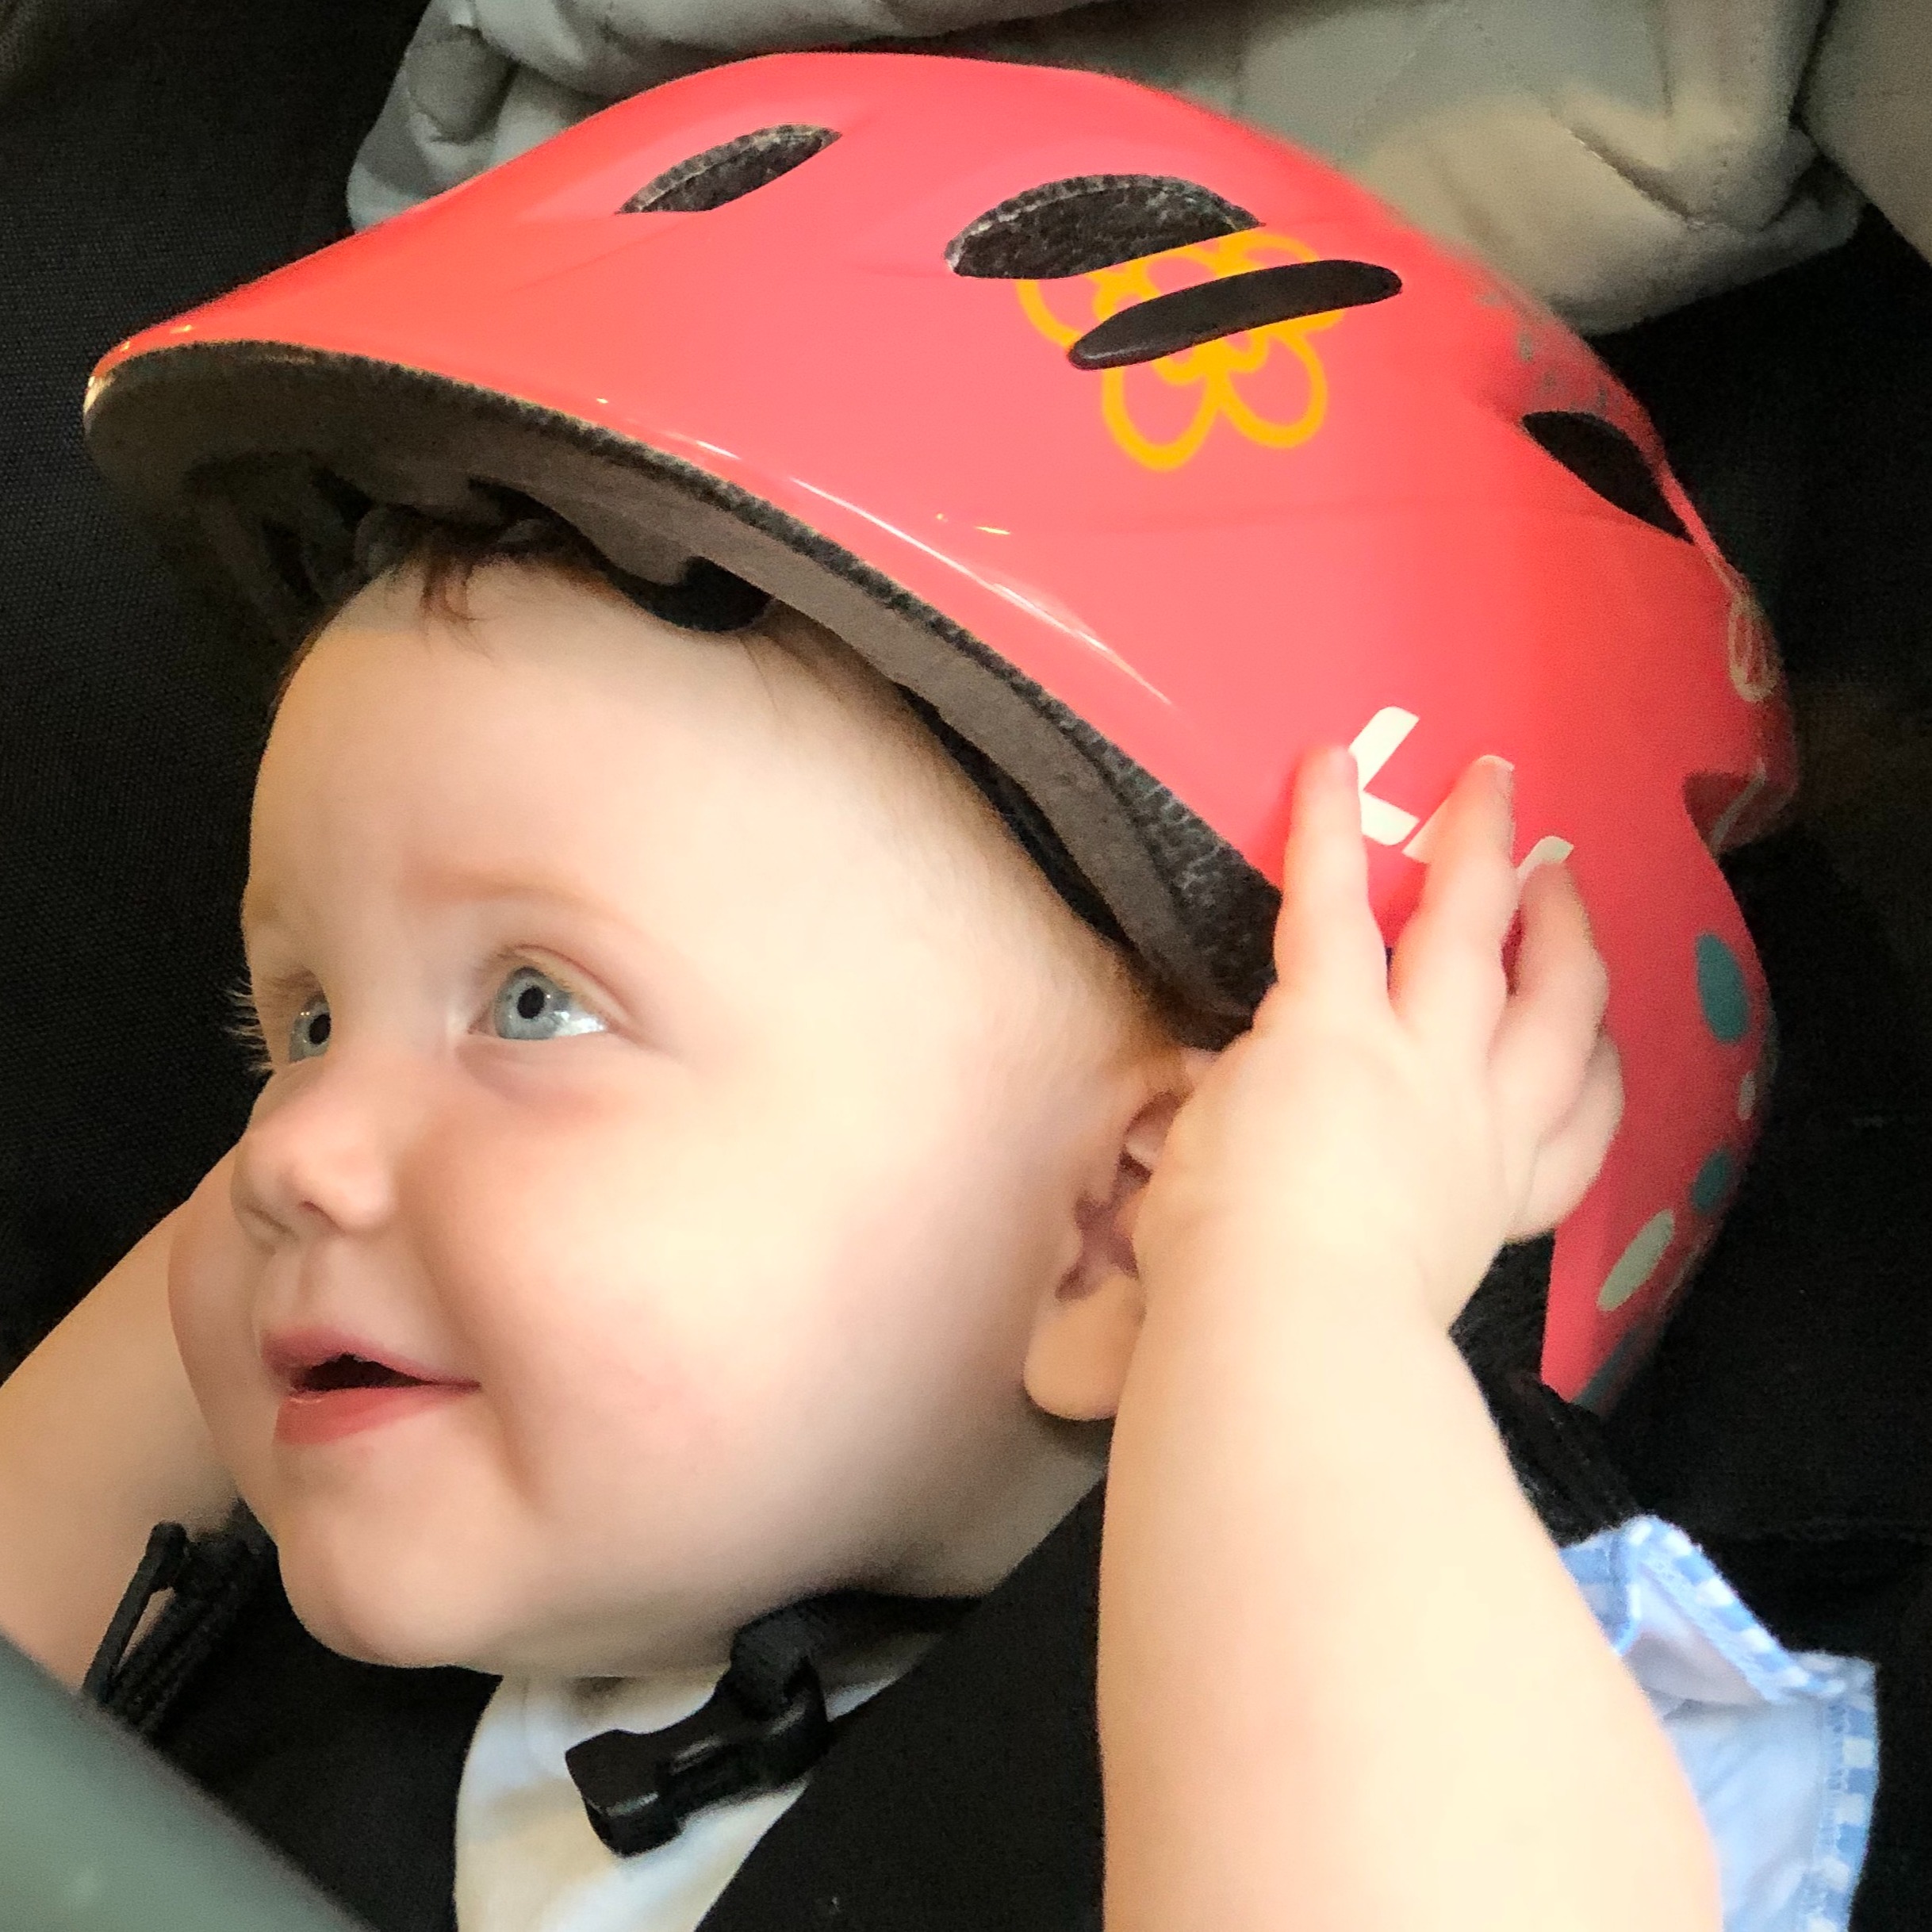 Kid's helmets